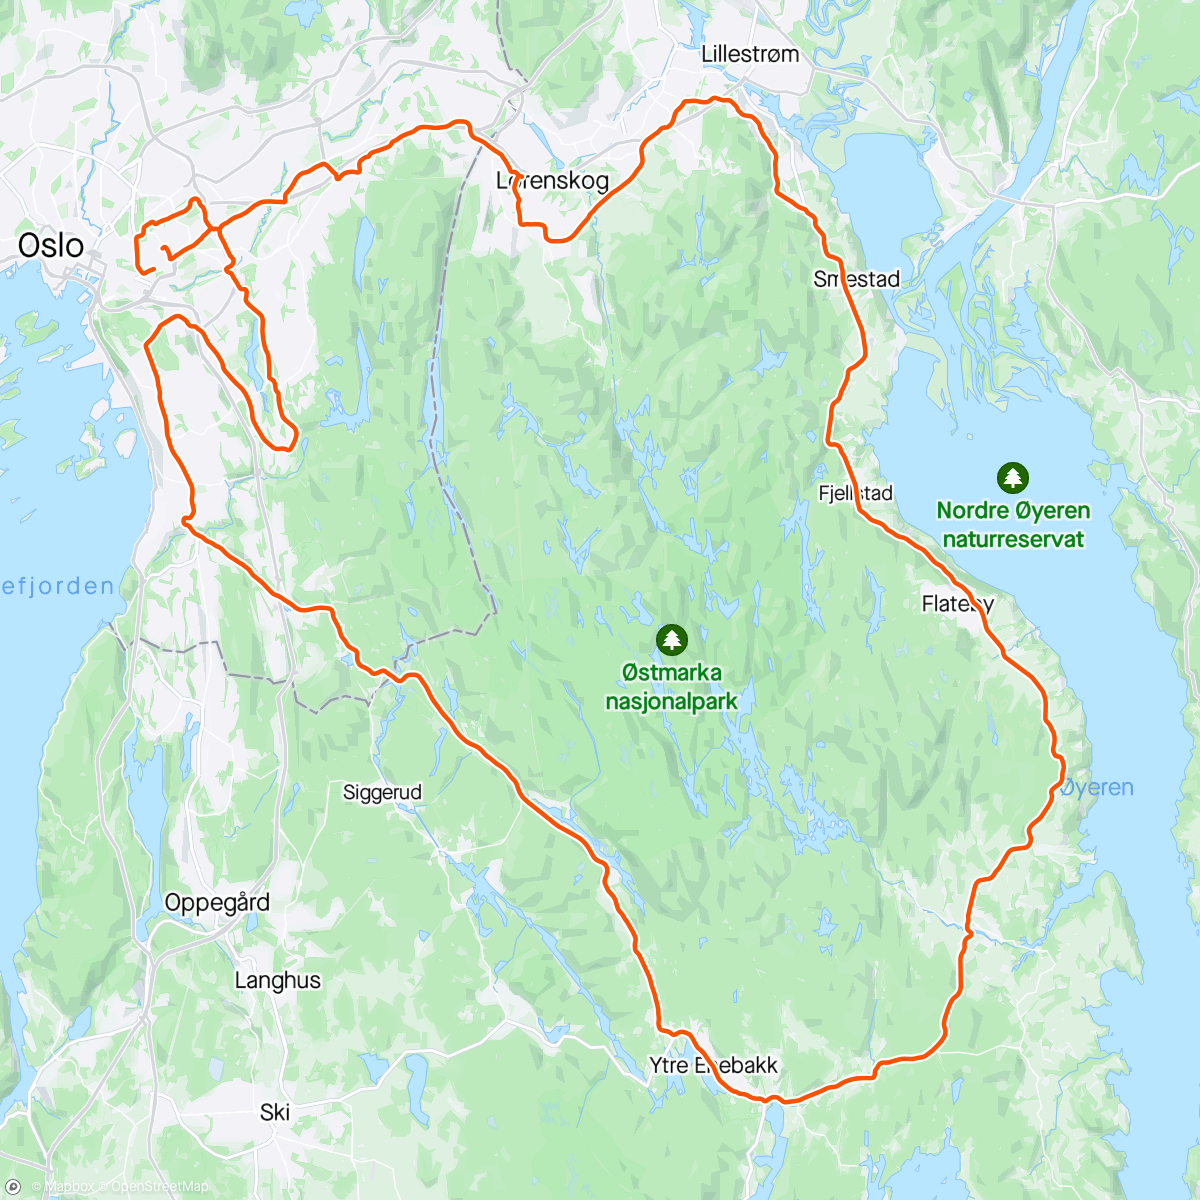 「Enebakk」活動的地圖